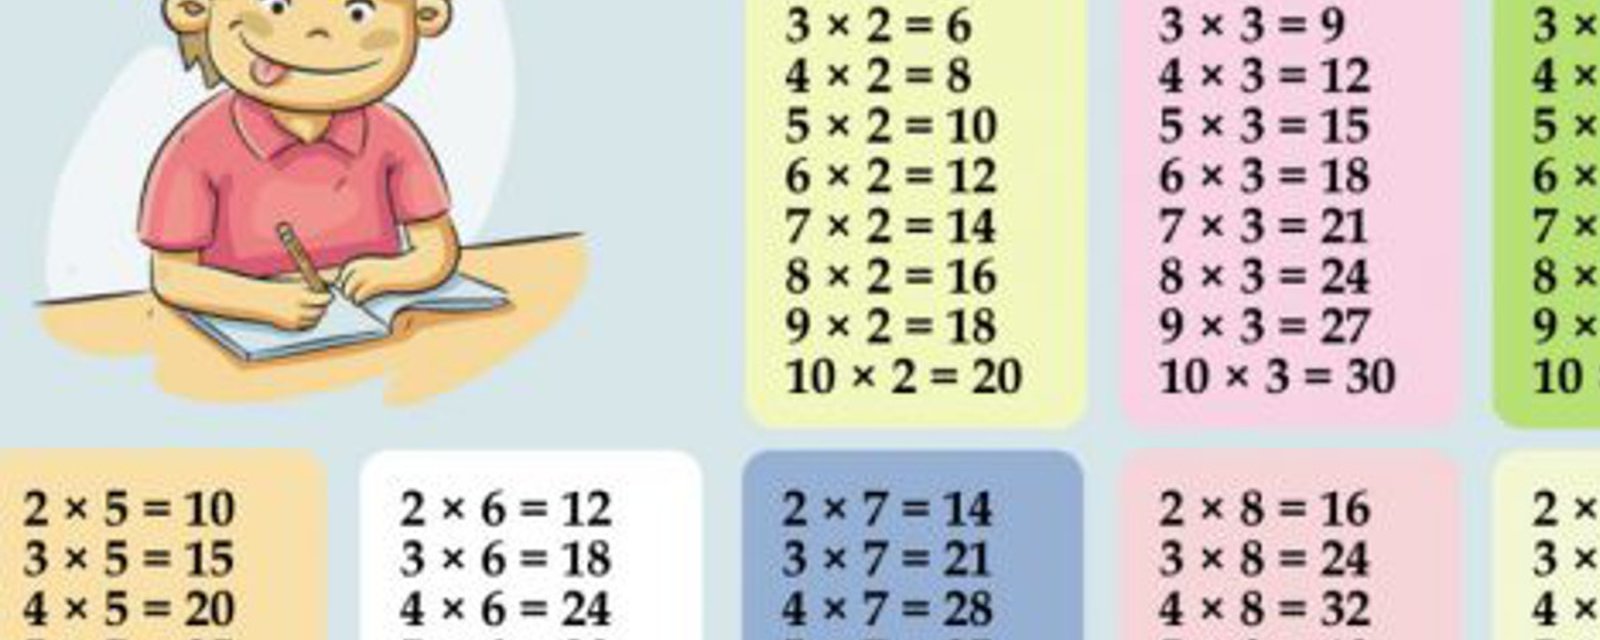 Un truc génial pour apprendre les tables de multiplication facilement aux enfants! 